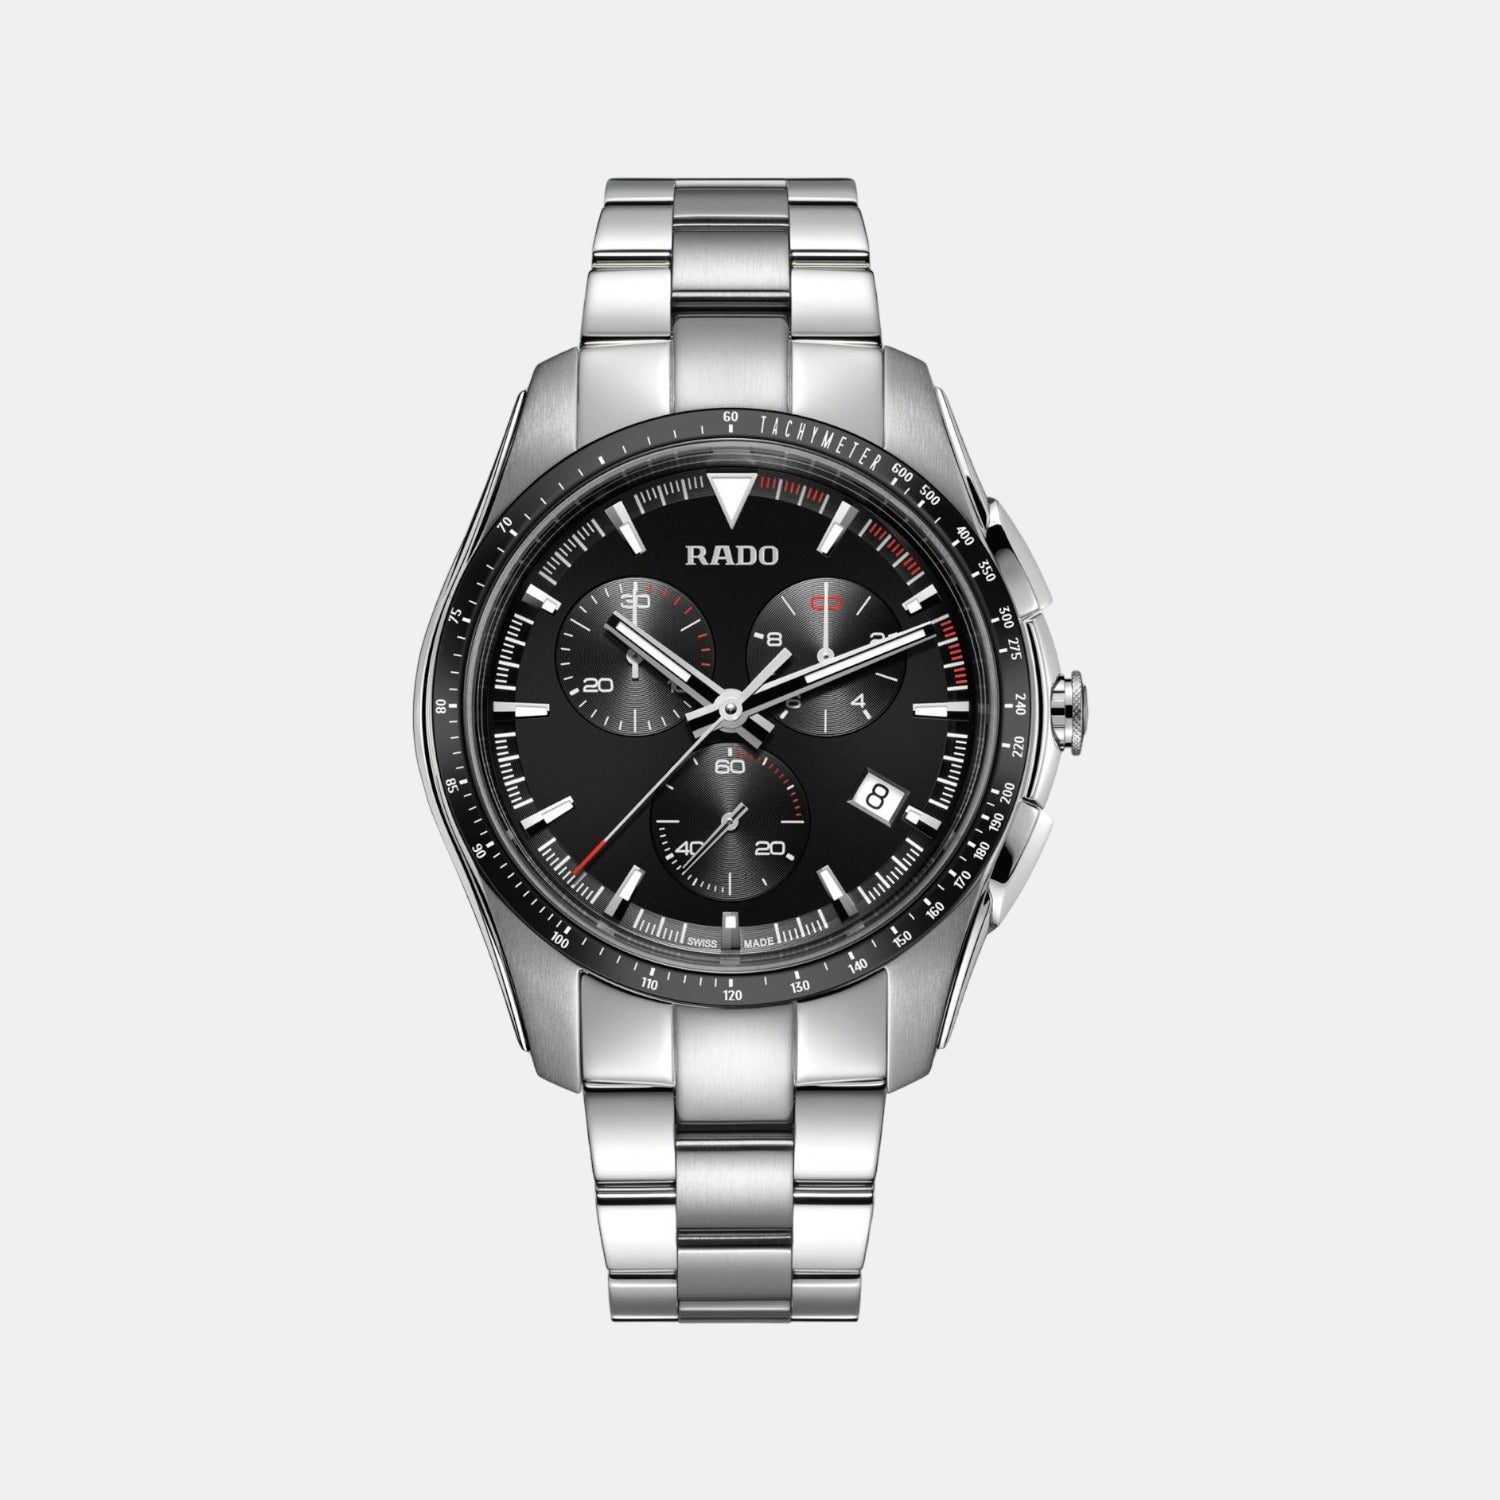 RADO Unique Titanium Scratch Proof w/Platinum Dial Men's Watch- $10K A